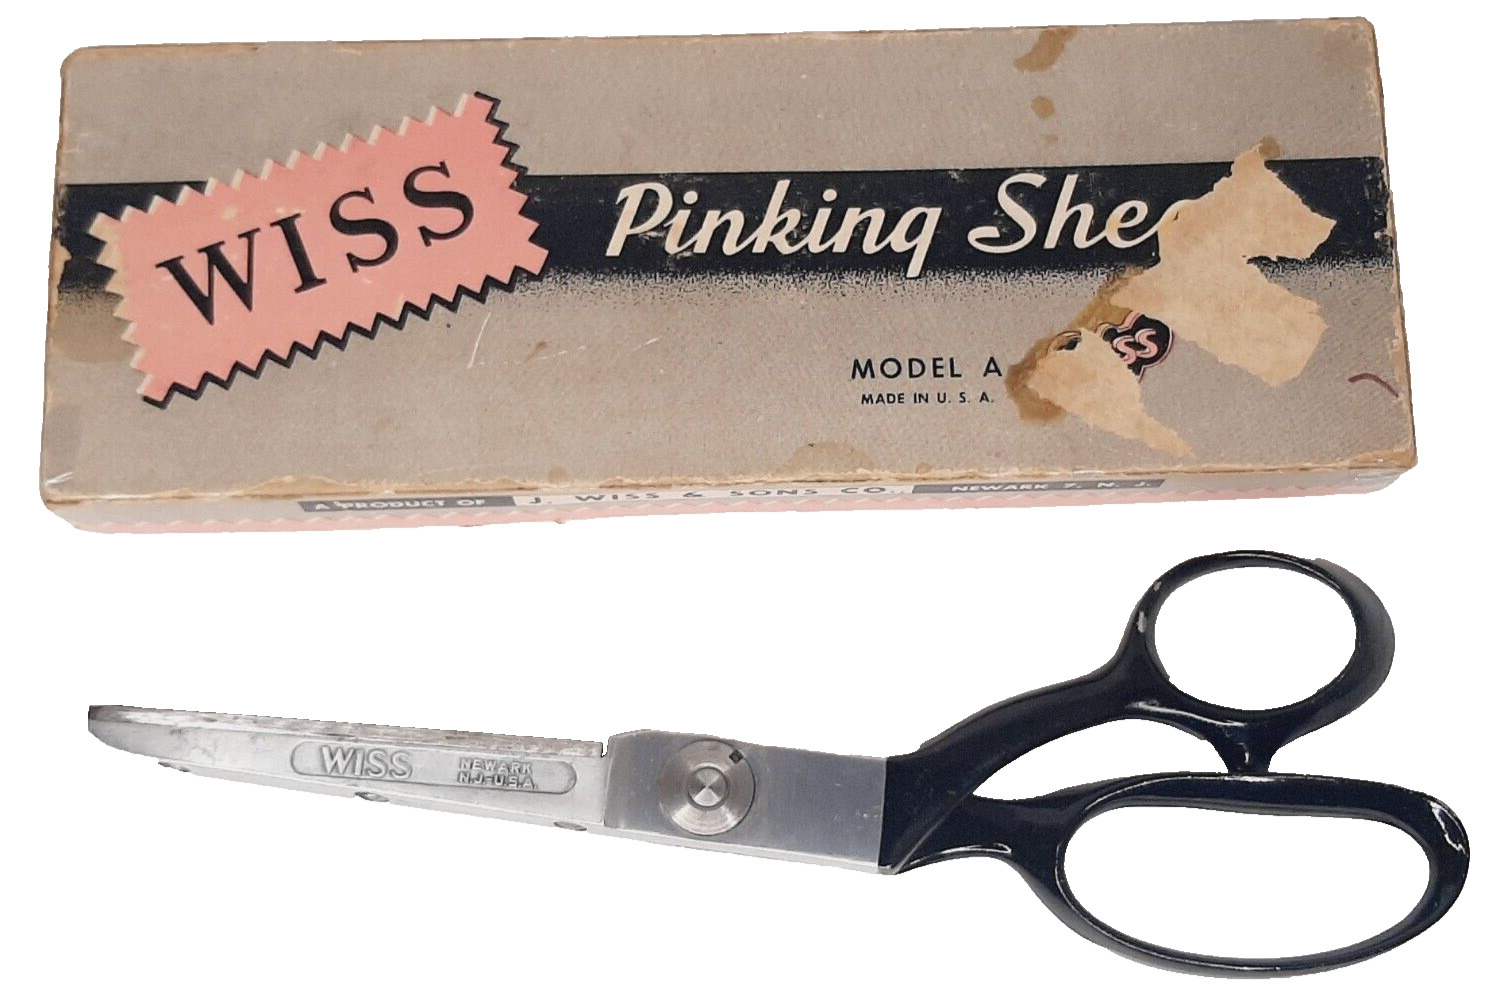 WISS Pinking Shears Model A Vintage Heavy Duty Professional Scissors w/ Box